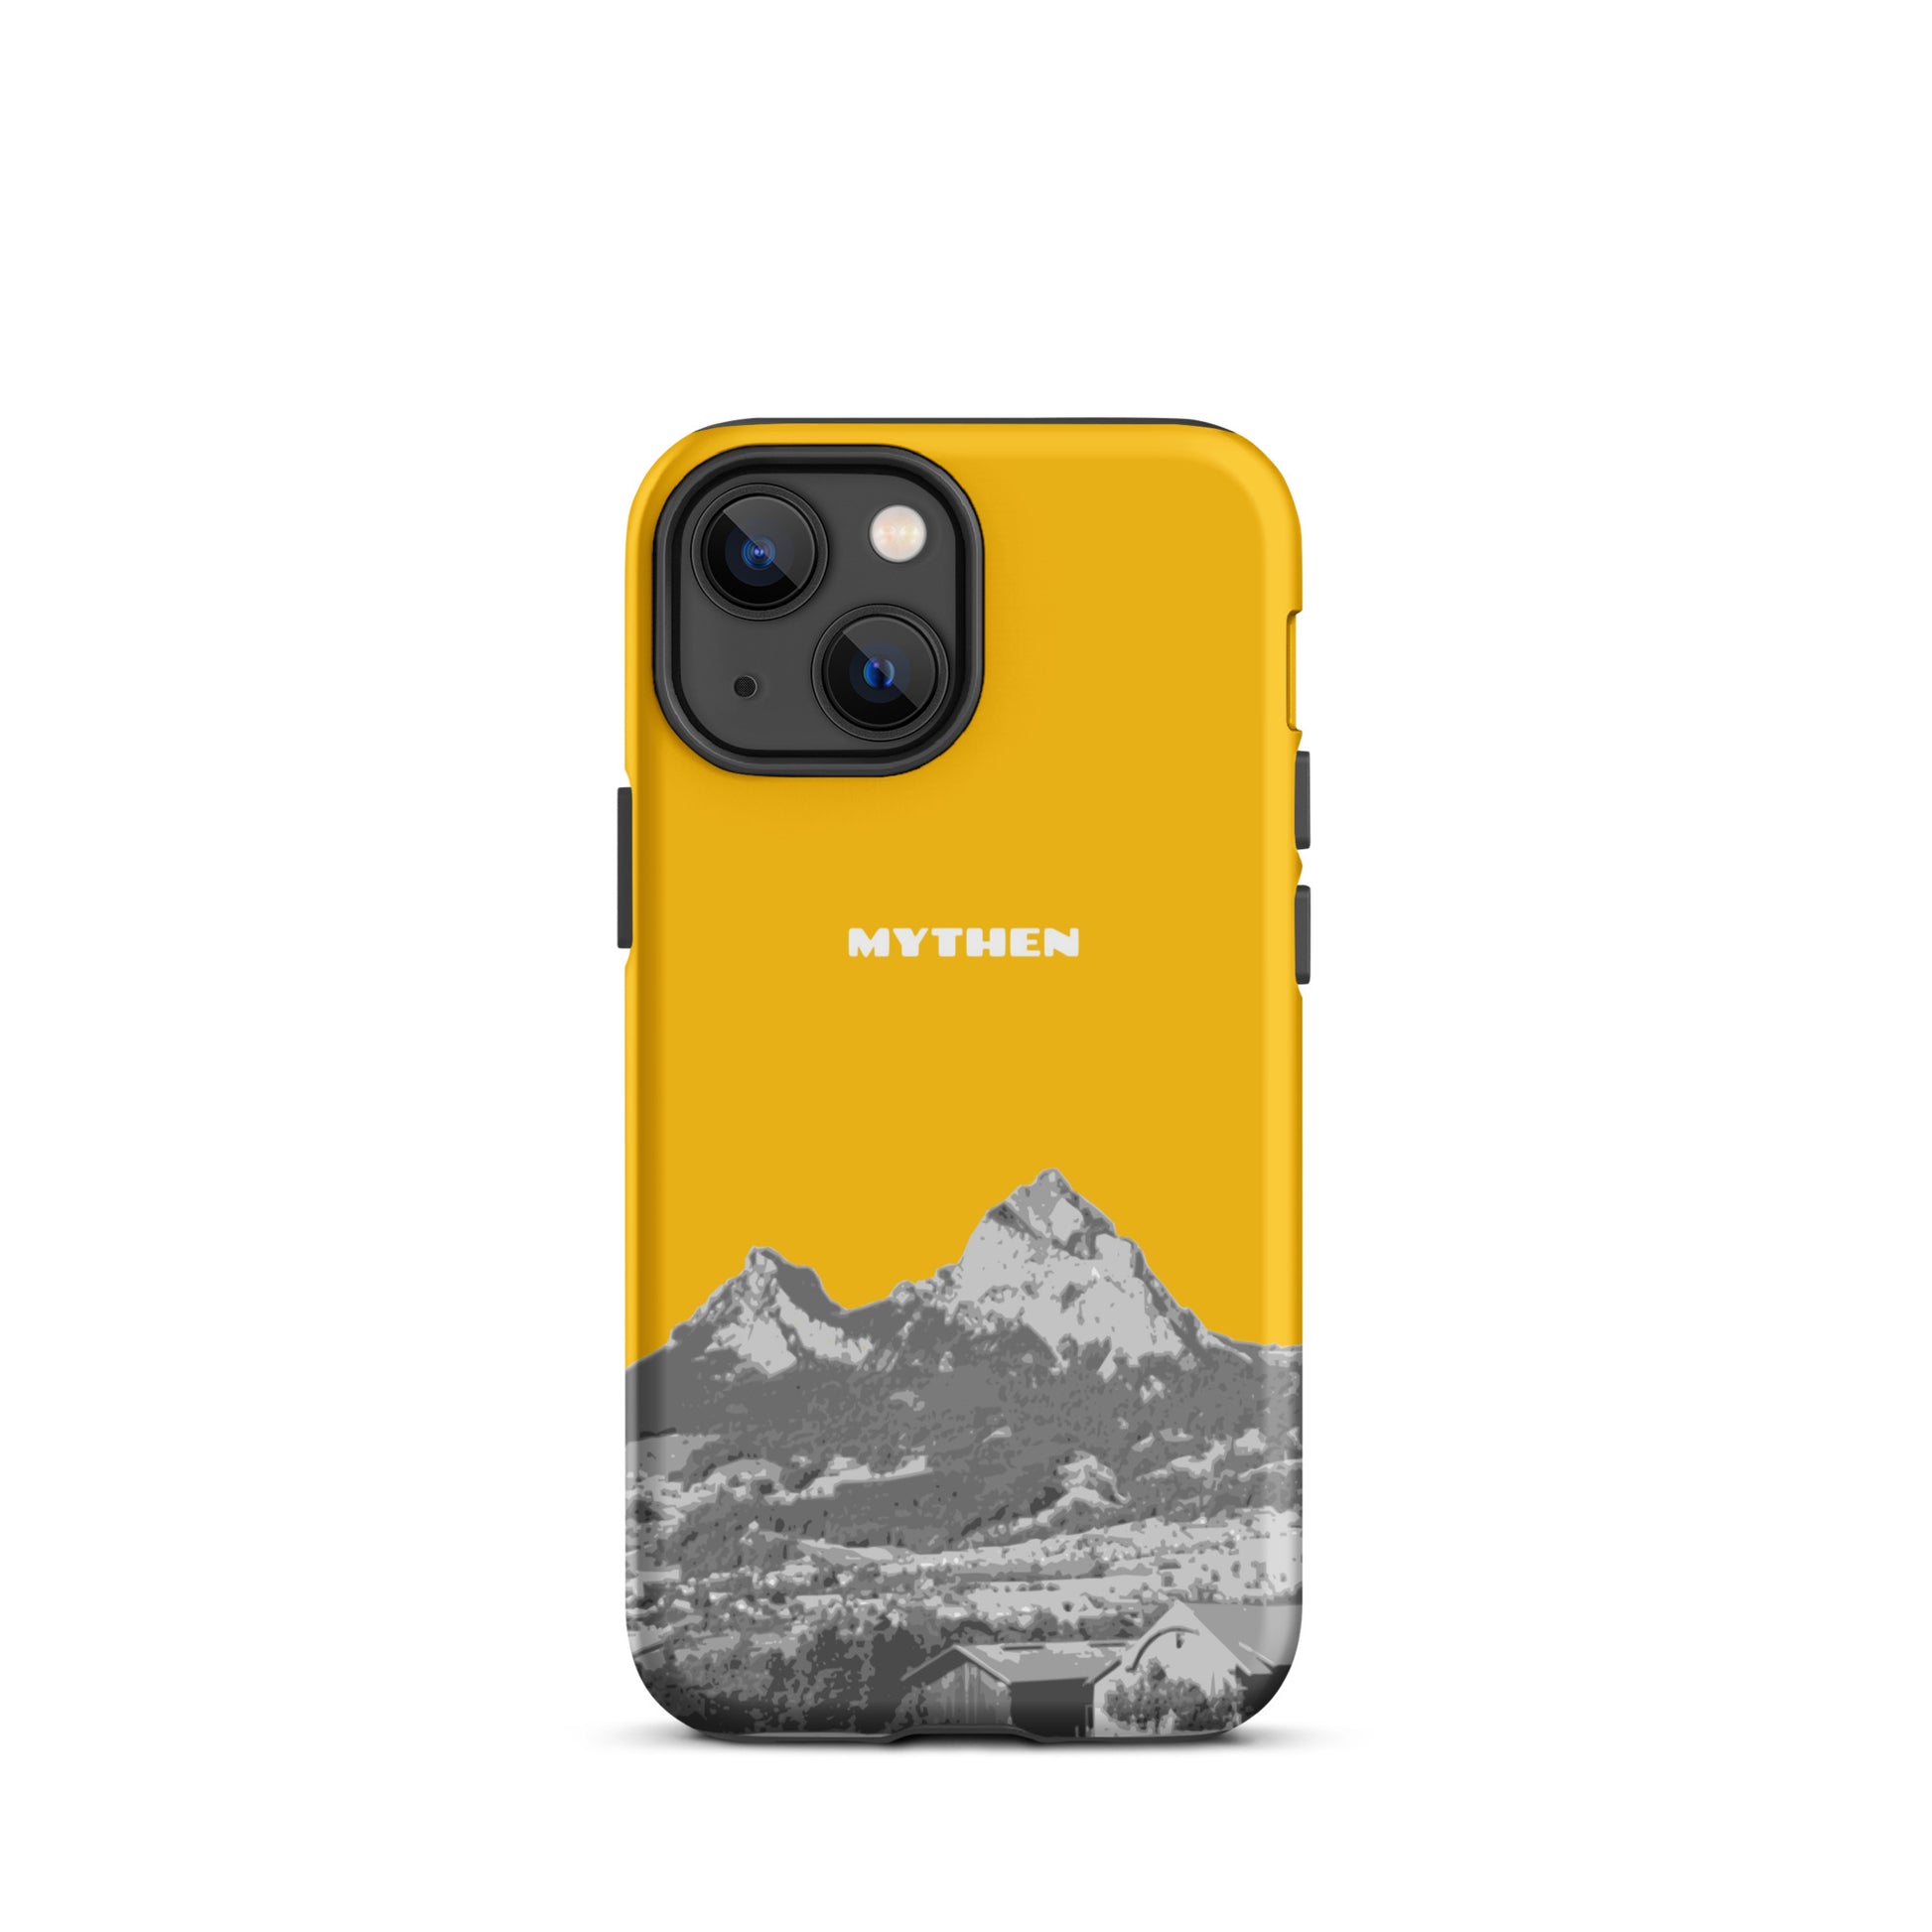 Hülle für das iPhone 13 mini von Apple in der Farbe Goldgelb, dass den Grossen Mythen und den Kleinen Mythen bei Schwyz zeigt. 